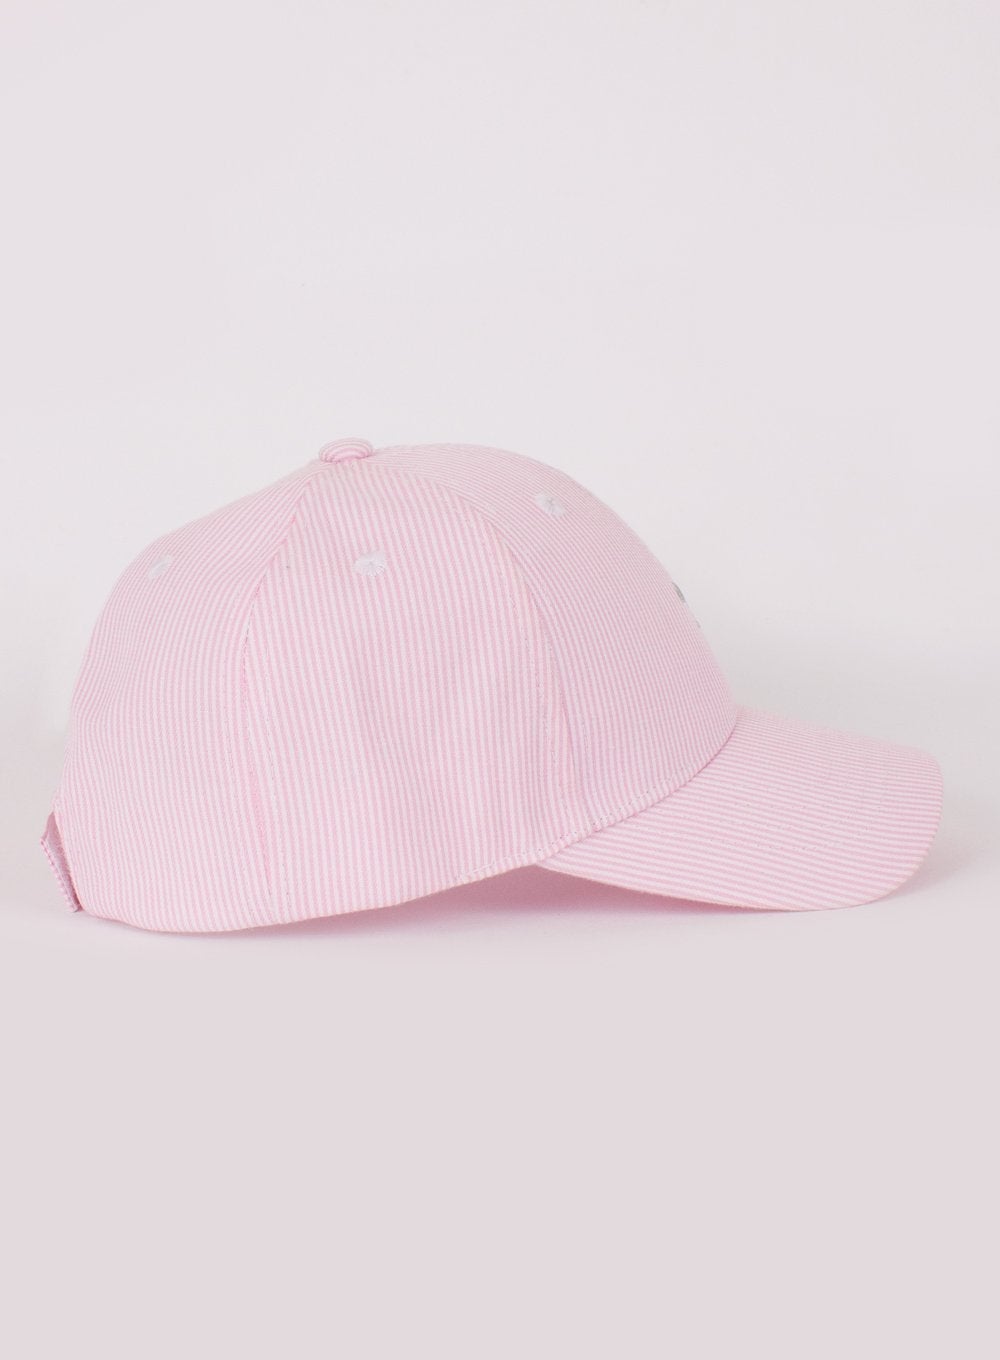 Thomas Brown Hat Charlie Cap in Pink Stripe